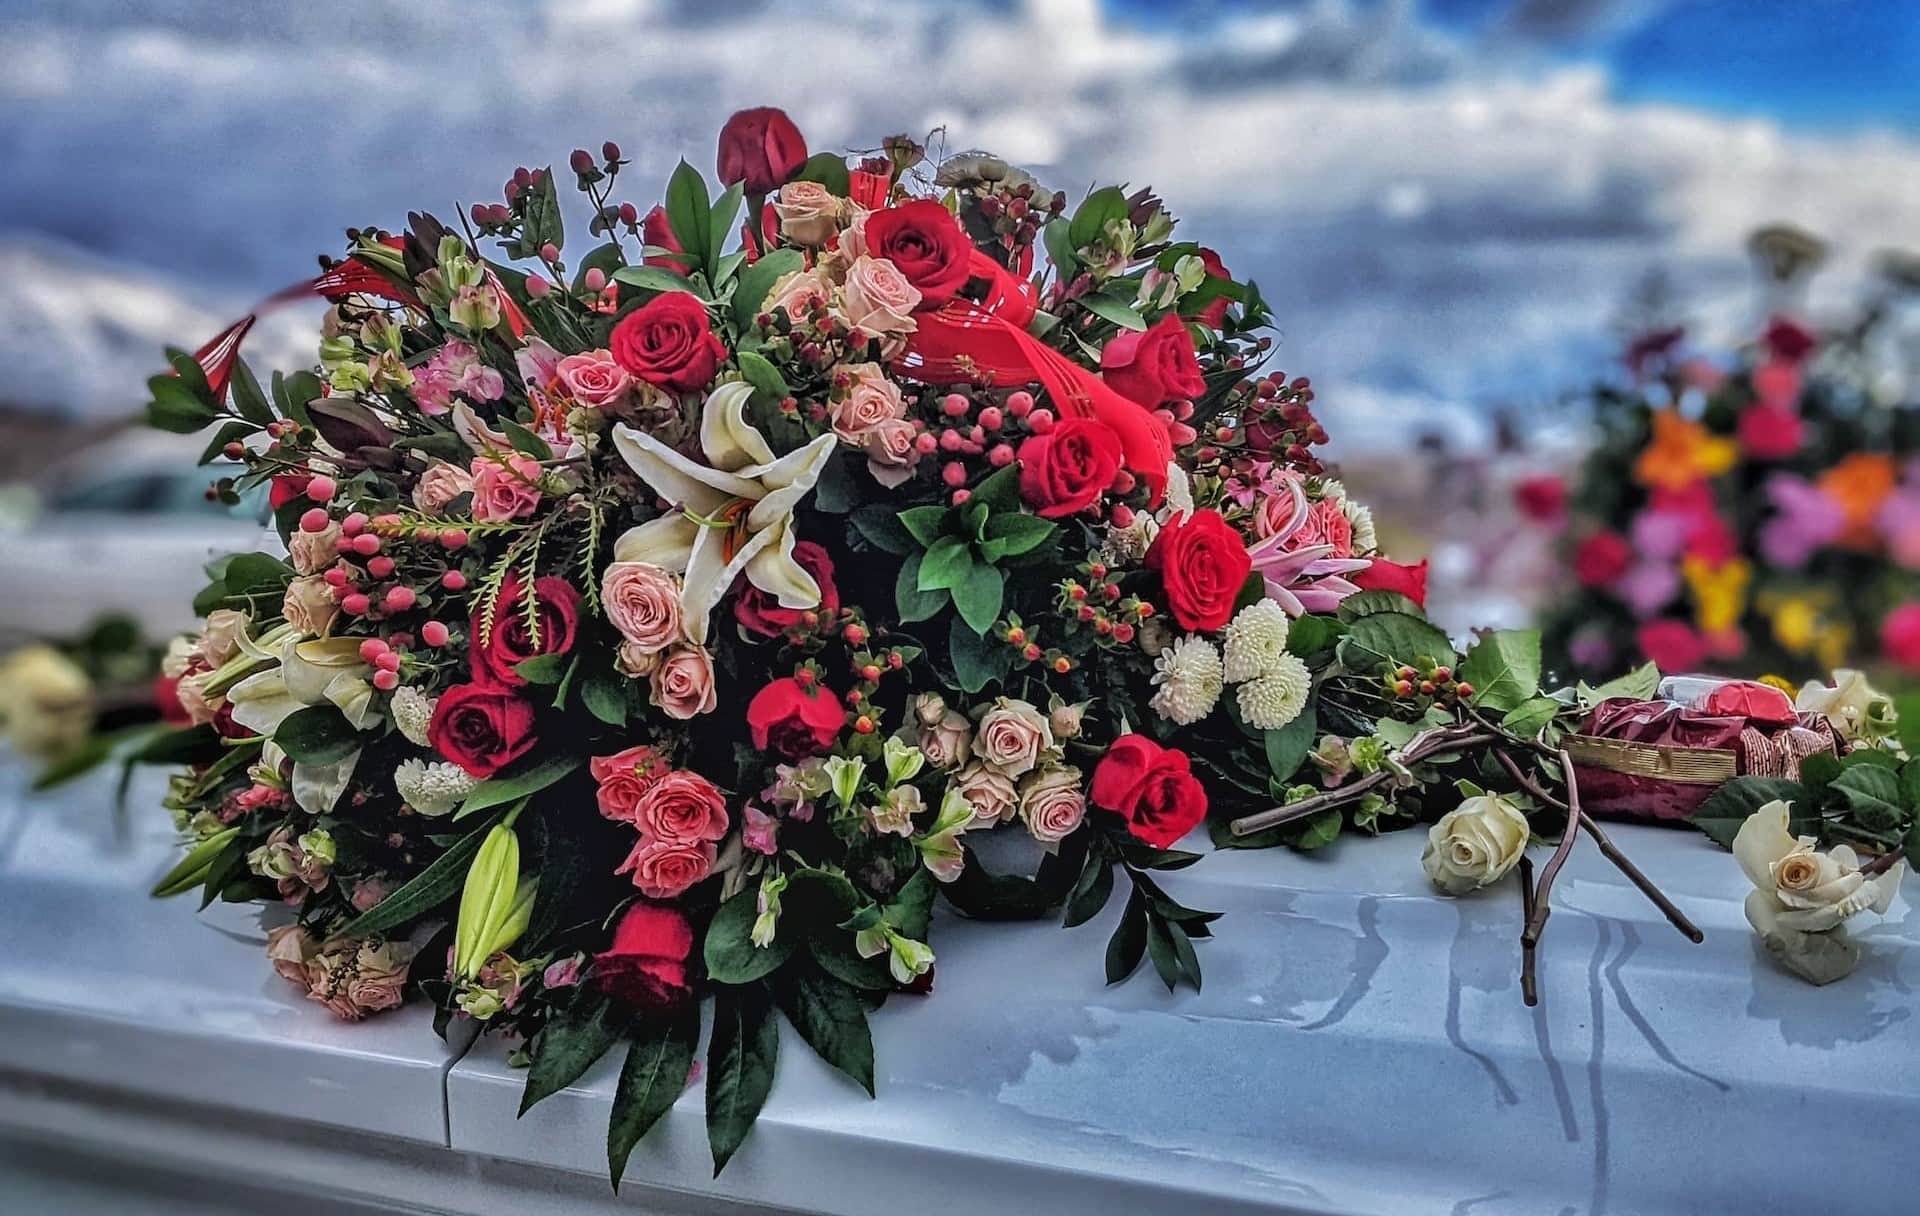 Décoration florale pour les funérailles